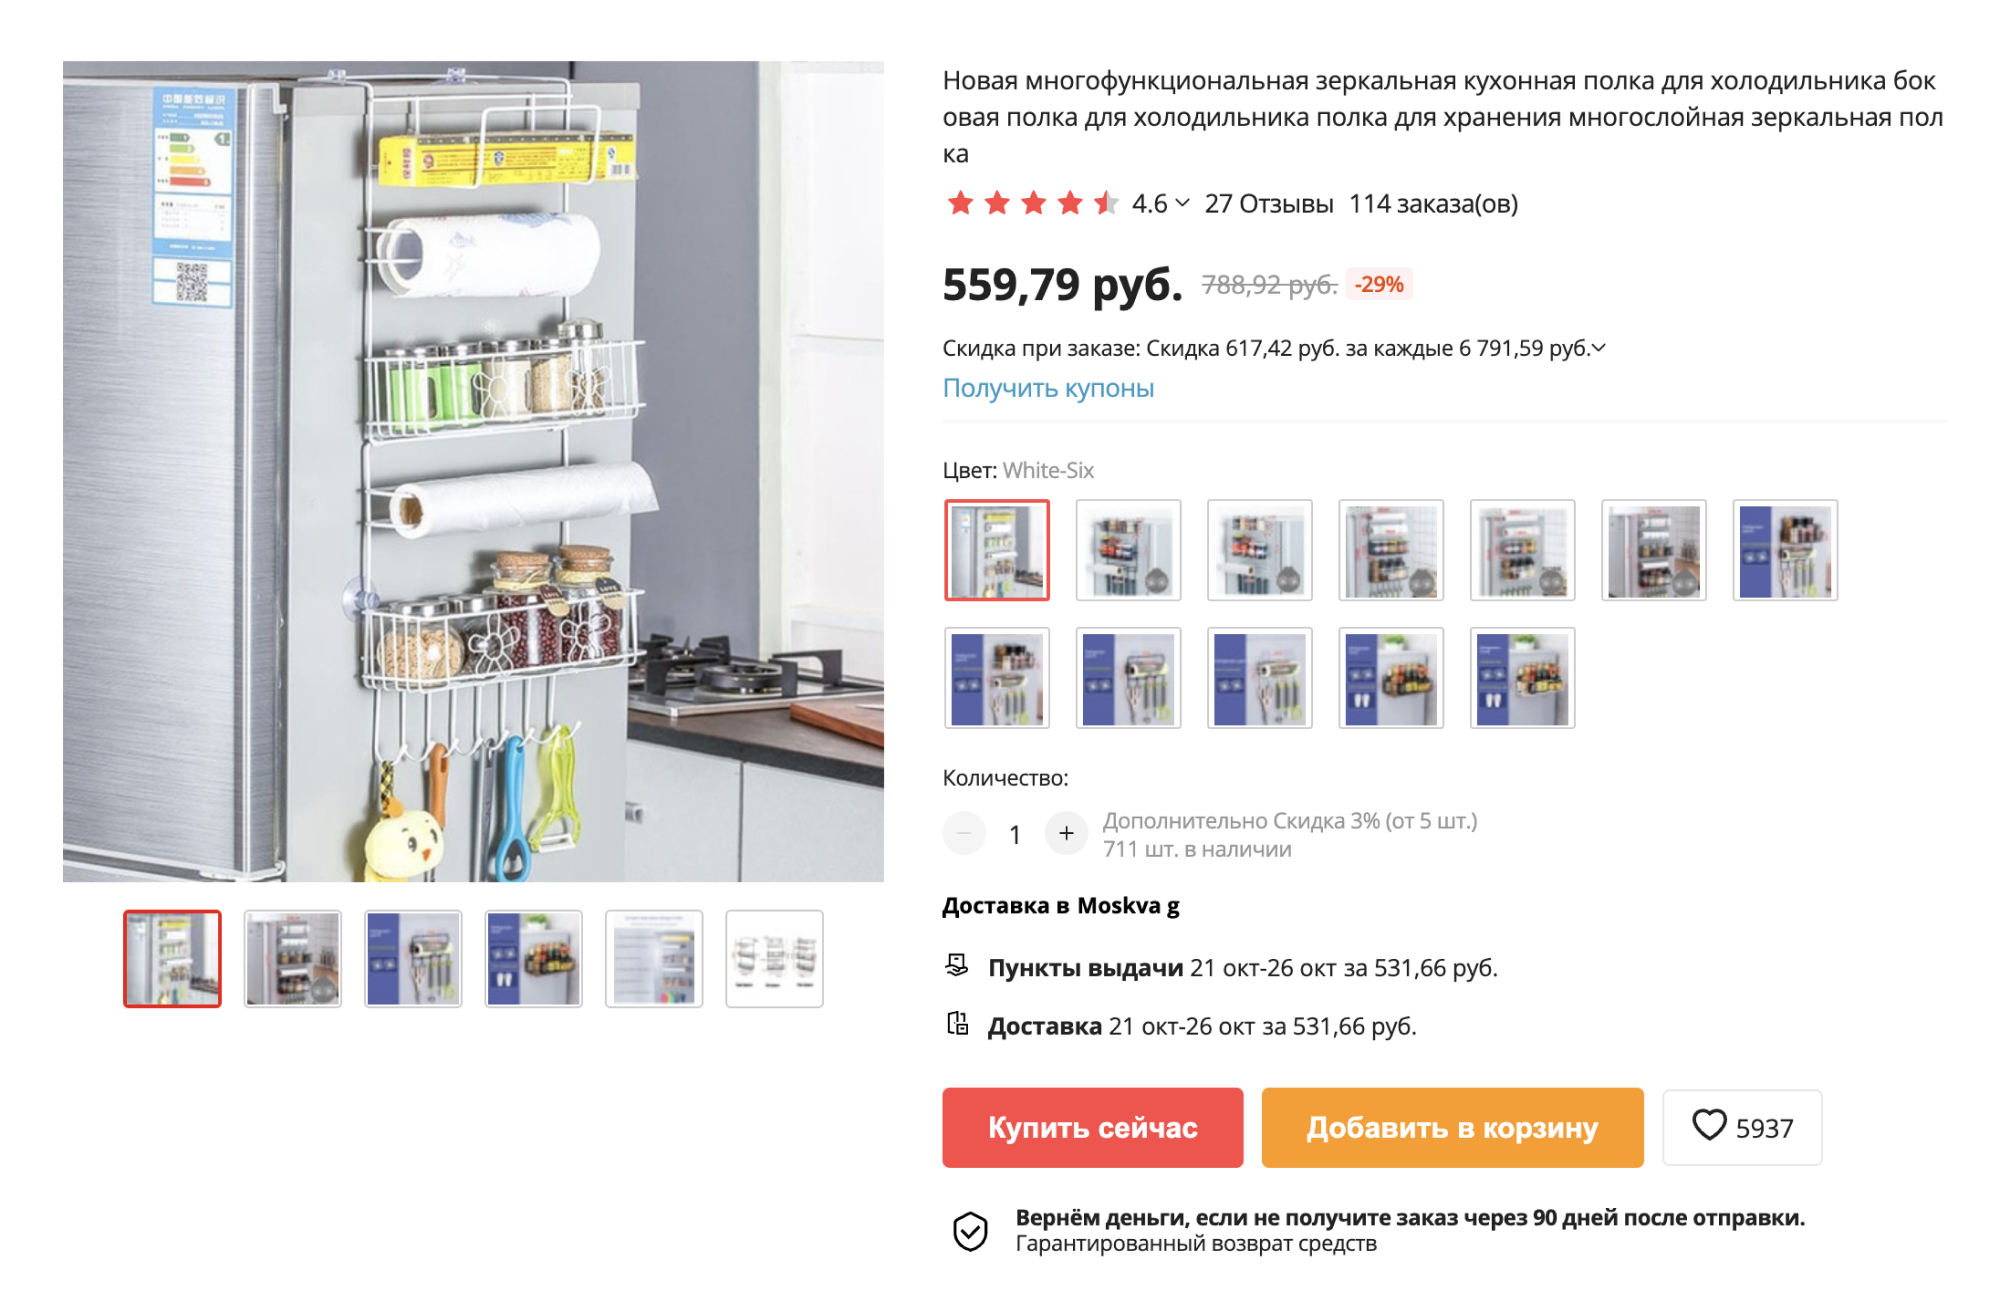 Подвесной органайзер для мелочей для боковой стороны холодильника. Крепится на силиконовые стикеры с крючками. Подойдет для съемной квартиры. Цена — 520 ₽ на: aliexpress.ru